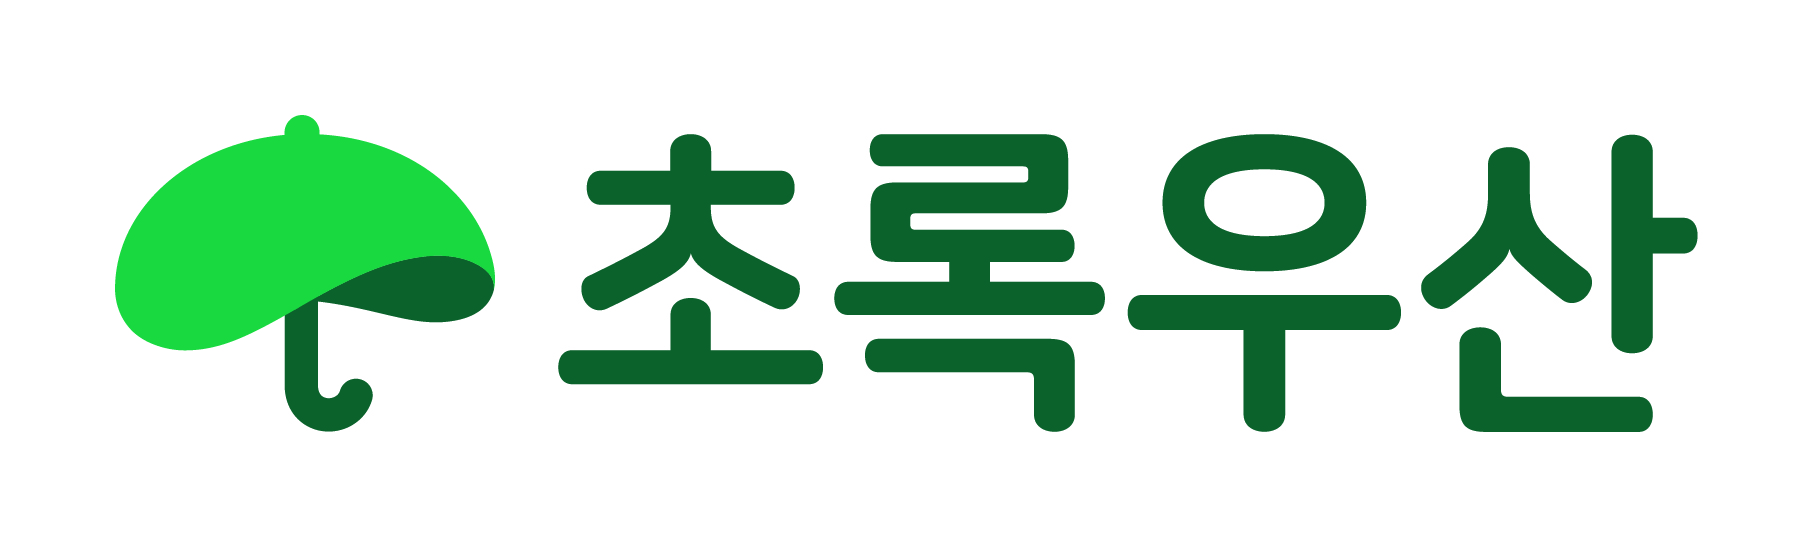 초록우산 어린이 재단